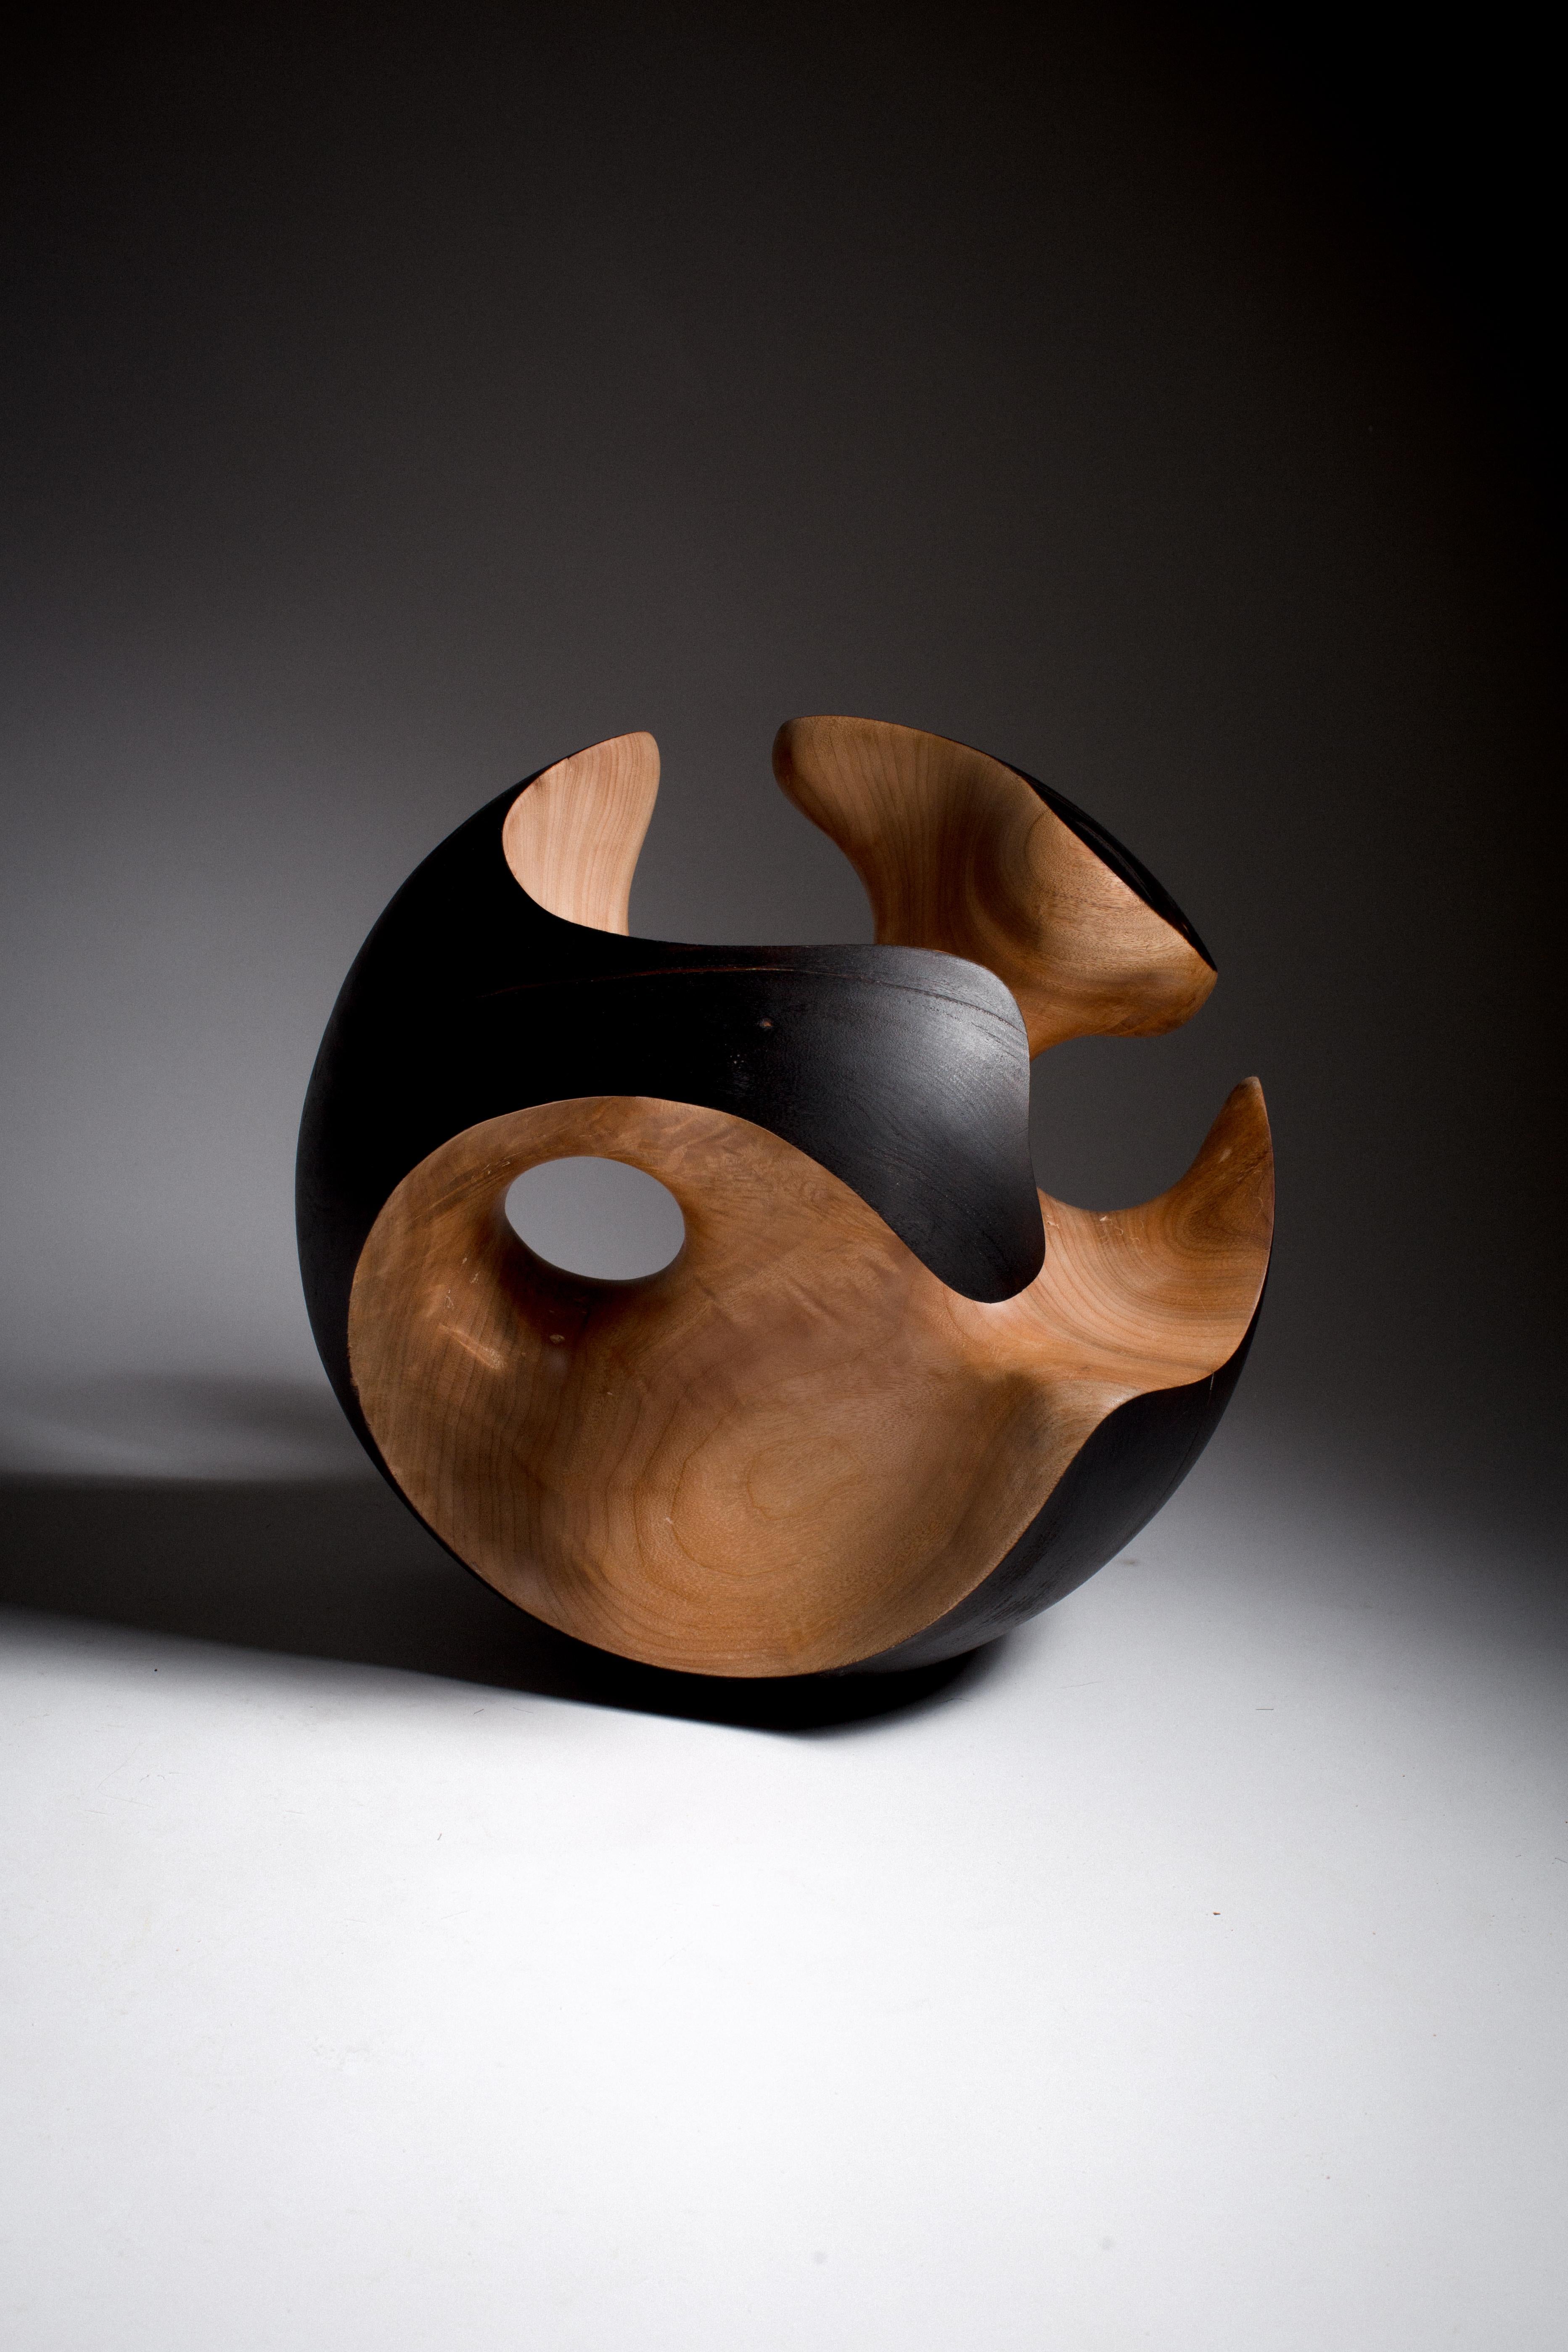 Driaan Claassen for Reticence, Abstract Geometric Sculpture, Wooden Sphere 004 3